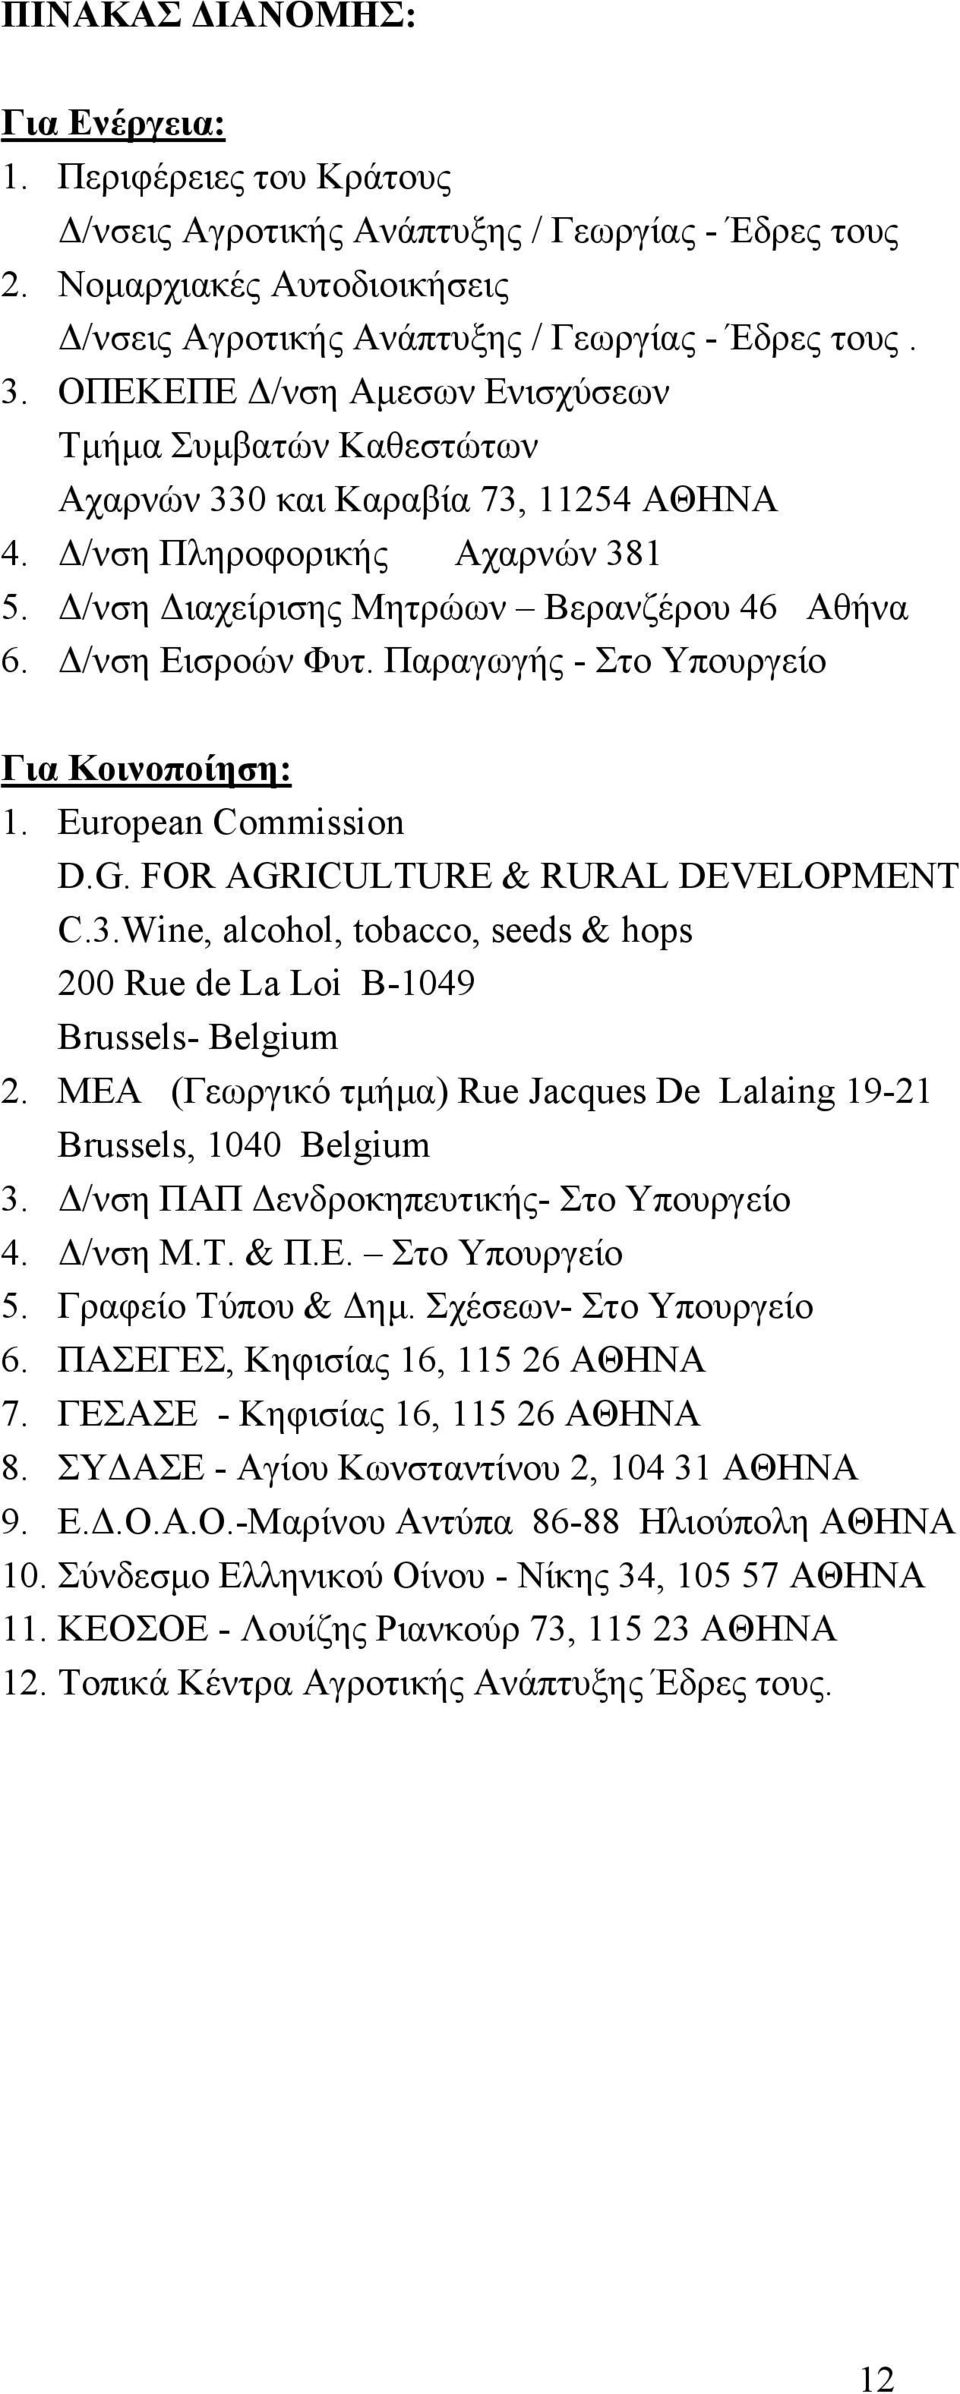 Δ/νση Εισροών Φυτ. Παραγωγής - Στο Υπουργείο Για Κοινοπoίηση: 1. European Commission D.G. FOR AGRICULTURE & RURAL DEVELOPMENT C.3.